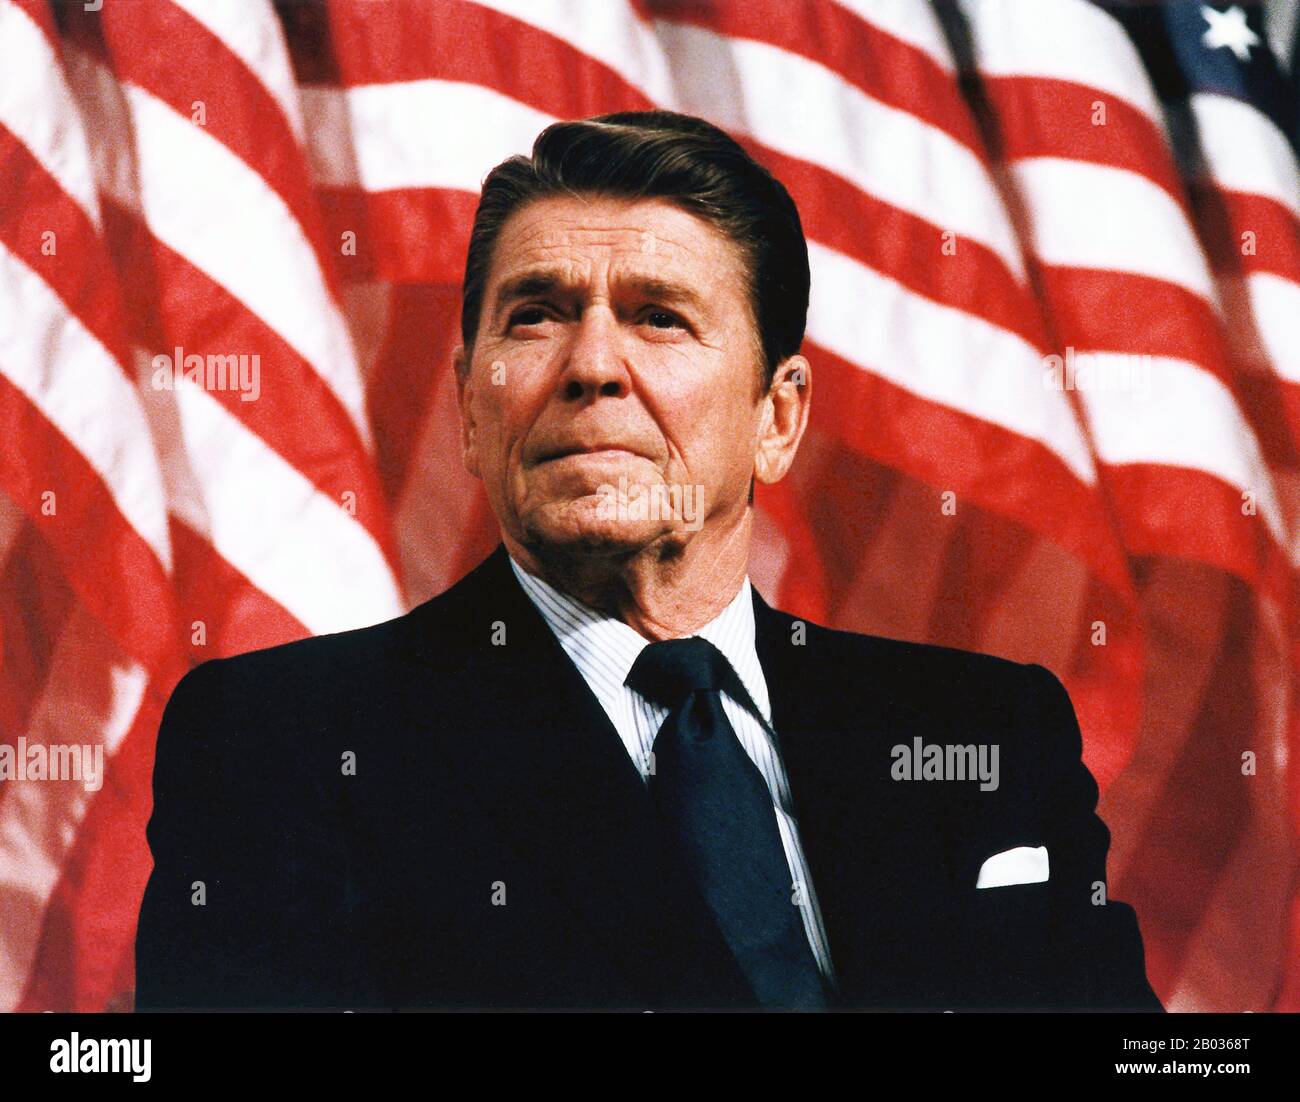 Ronald Wilson Reagan (6 février 1911 – 5 juin 2004, républicain) était un homme politique et acteur américain qui était le 40 e président des États-Unis de 1981 à 1989. Avant sa présidence, il a été le 33ème gouverneur de la Californie, de 1967 à 1975, après une carrière d'acteur hollywoodien et de dirigeant syndical. Banque D'Images